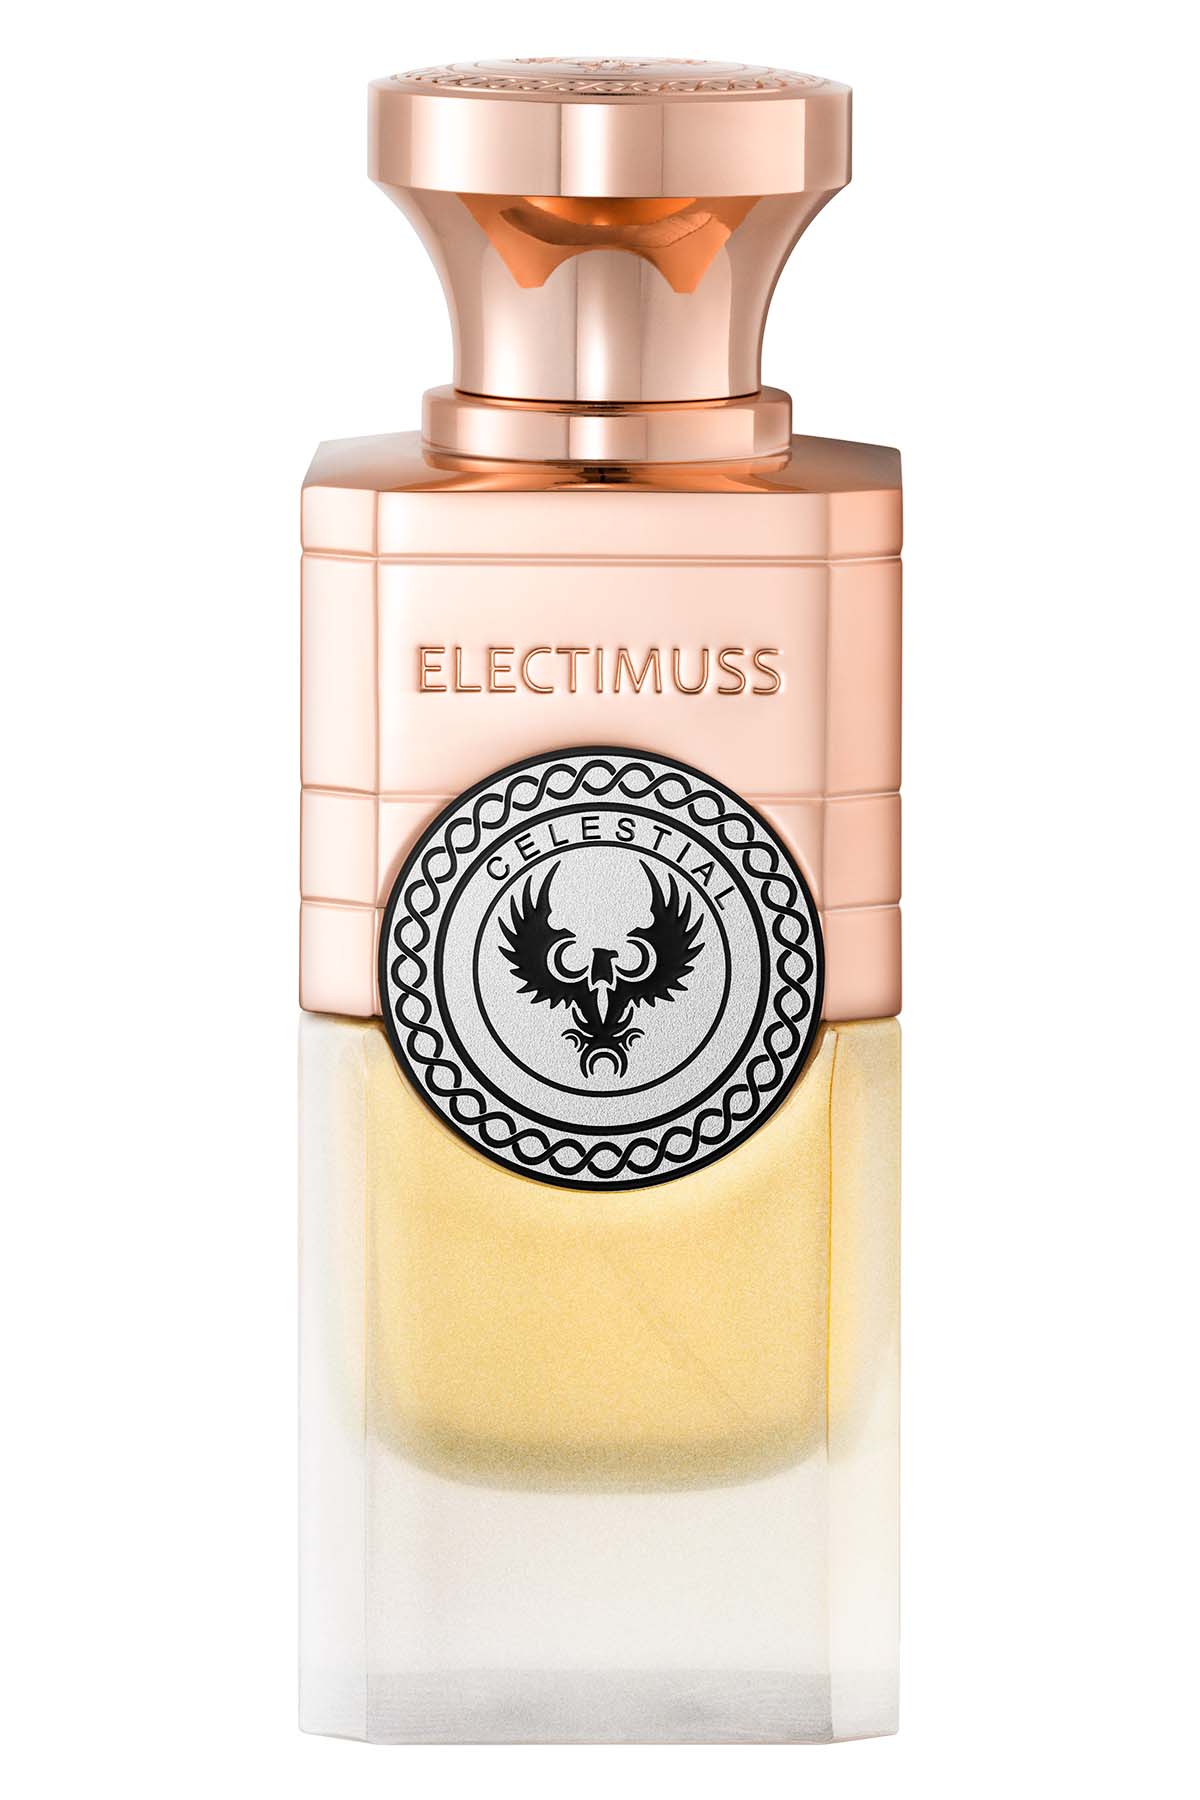 Electimuss Celestial Extrait de Parfum